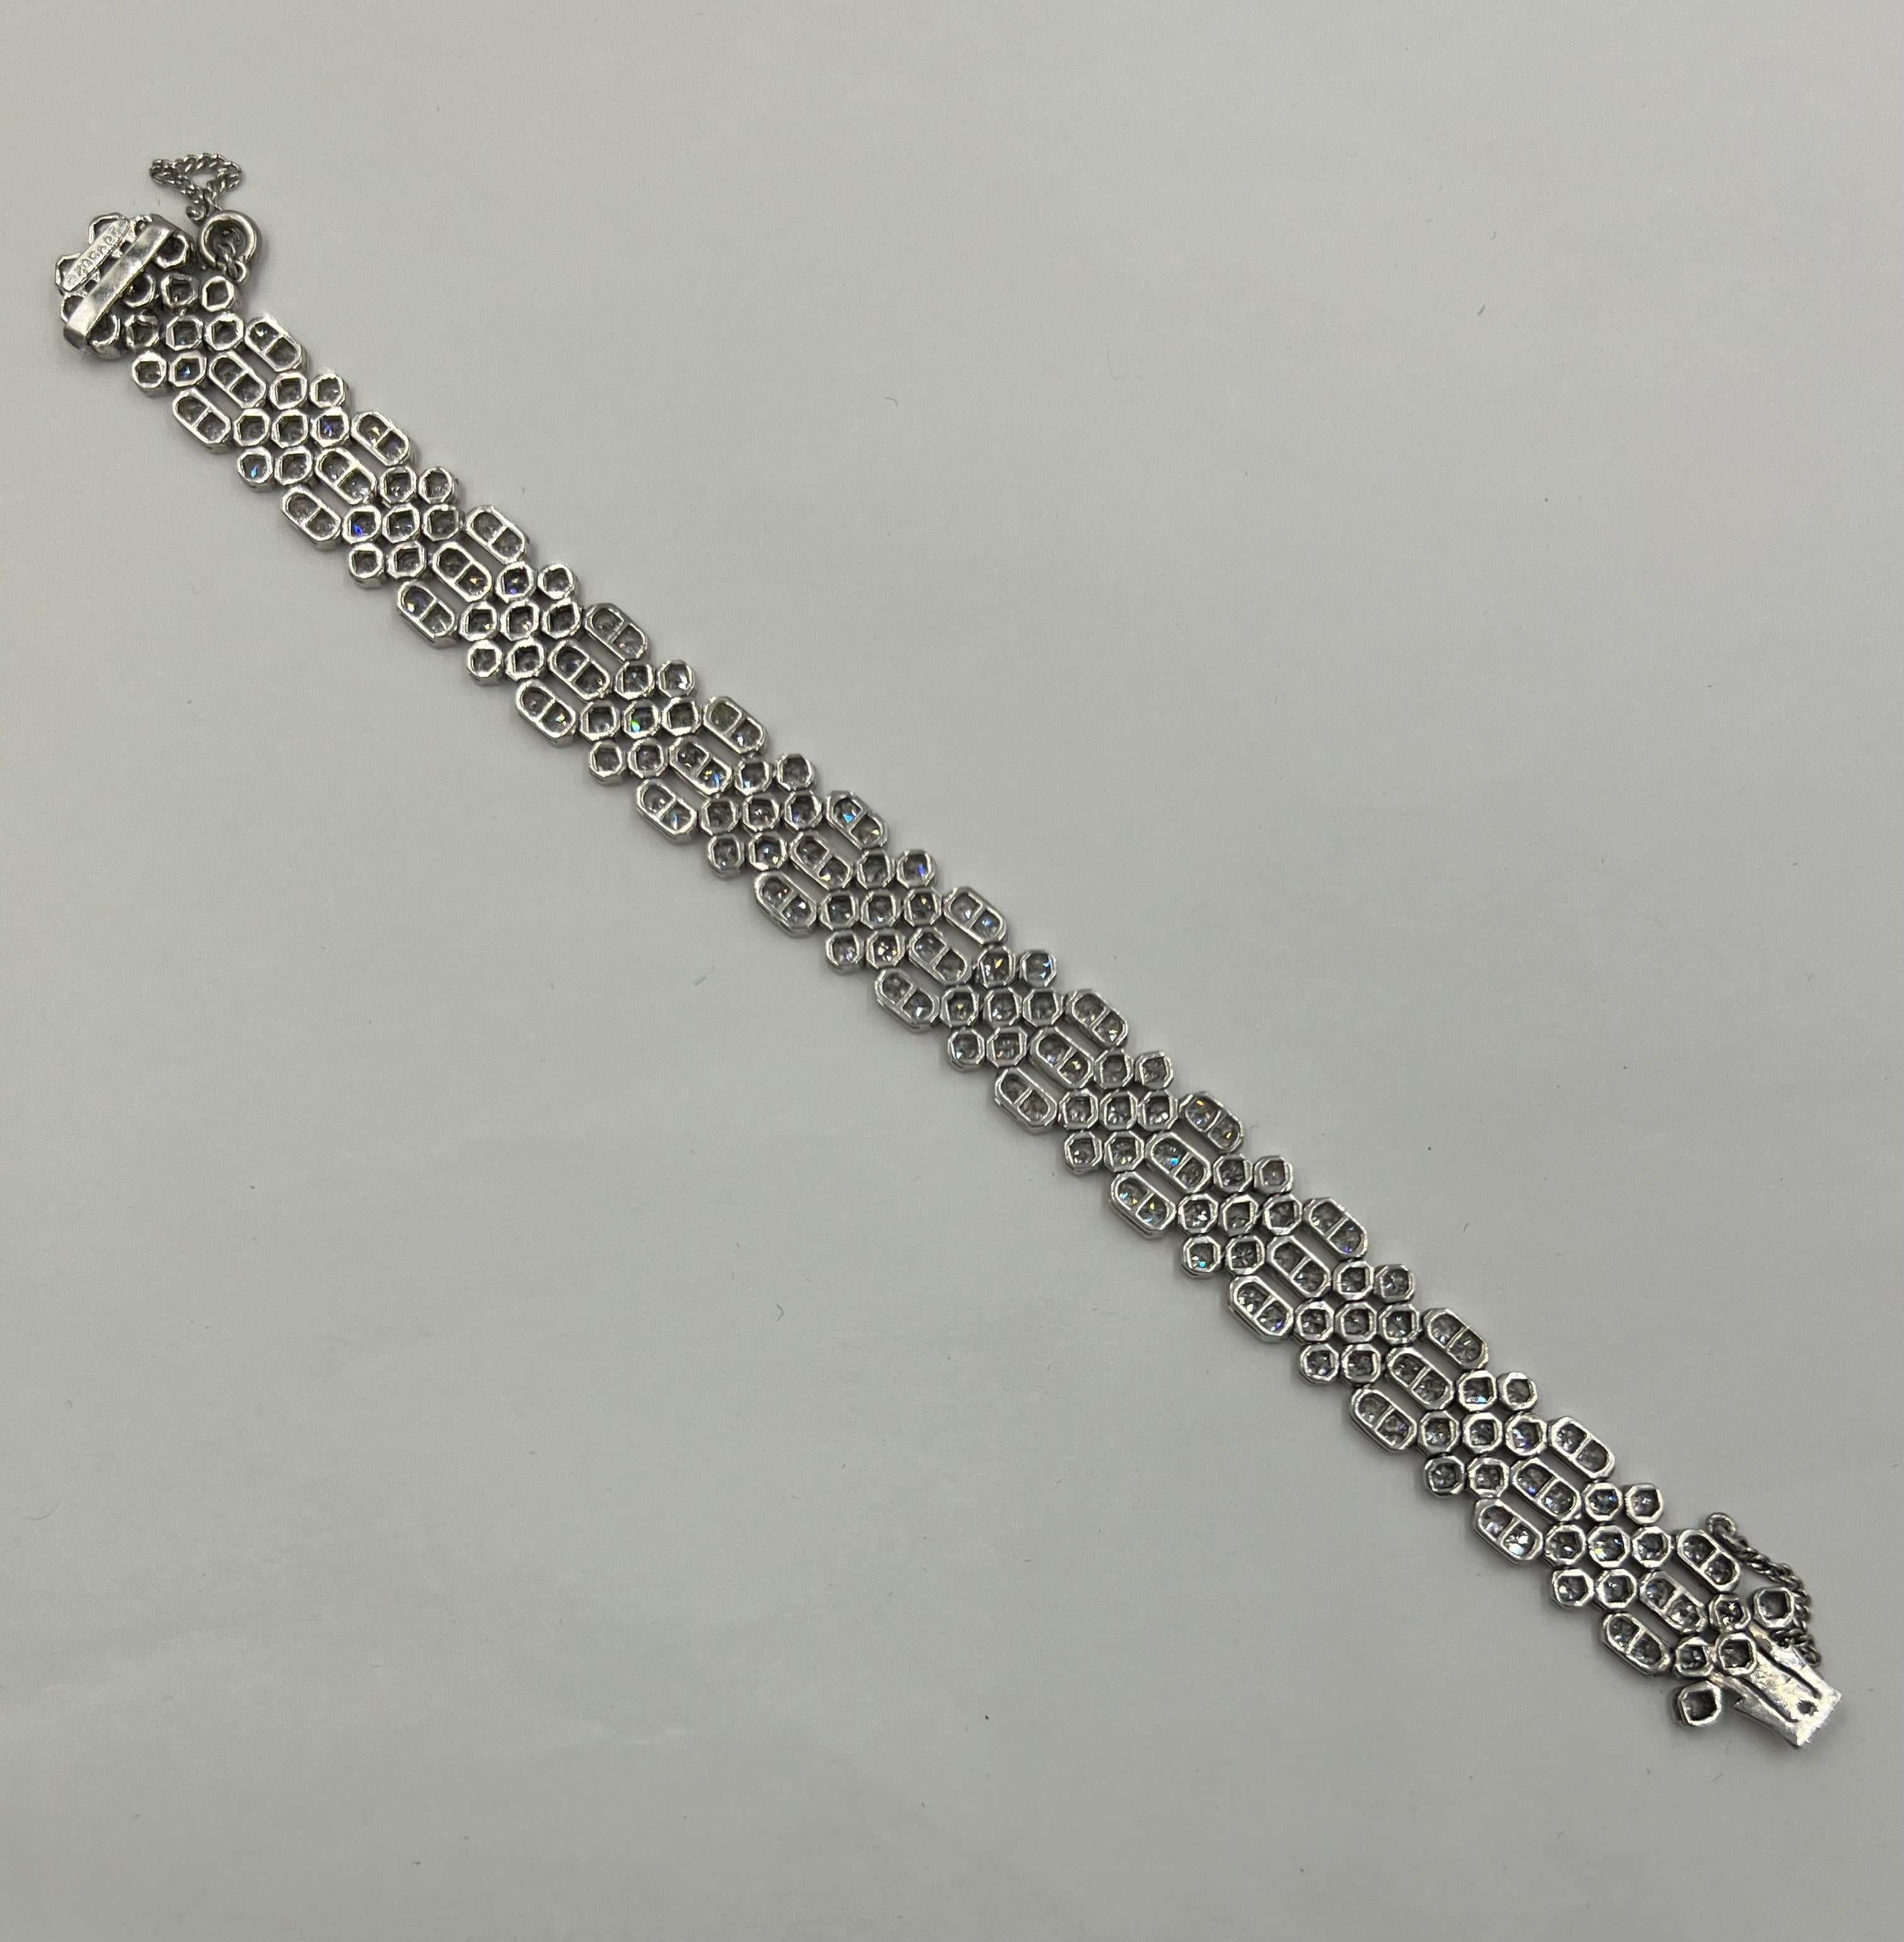 Art-Déco-Diamant-Armband aus Platin, um 1930.

Dieses Art-Déco-Diamant-Platin-Armband ist ein atemberaubendes Schmuckstück, das die Eleganz und Raffinesse der Art-Déco-Ära verkörpert. Dieses mit Präzision und Liebe zum Detail gefertigte Armband